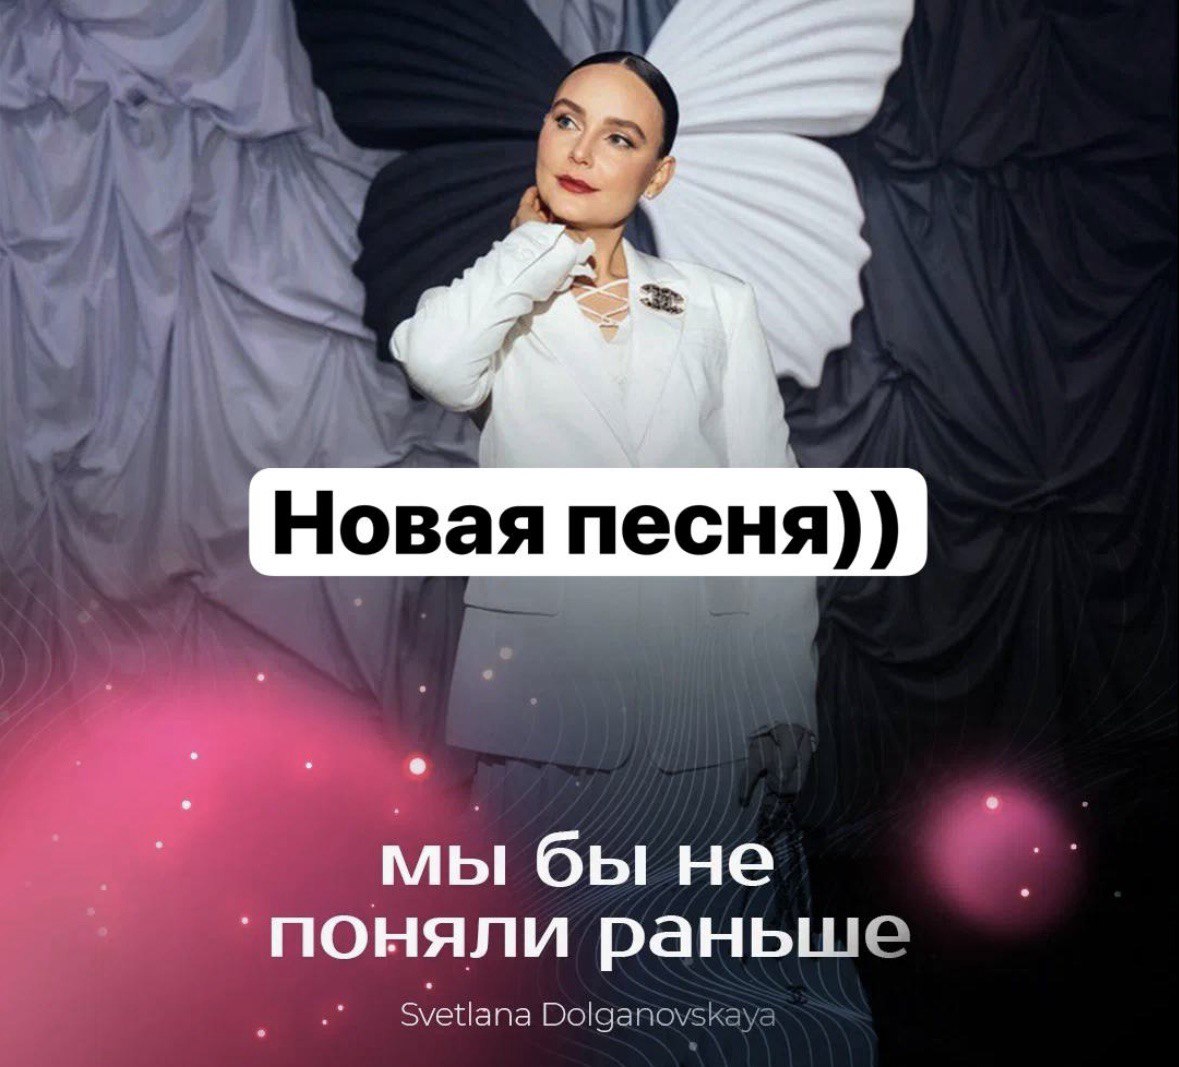 Светлана Долгановская выпустила новую песню